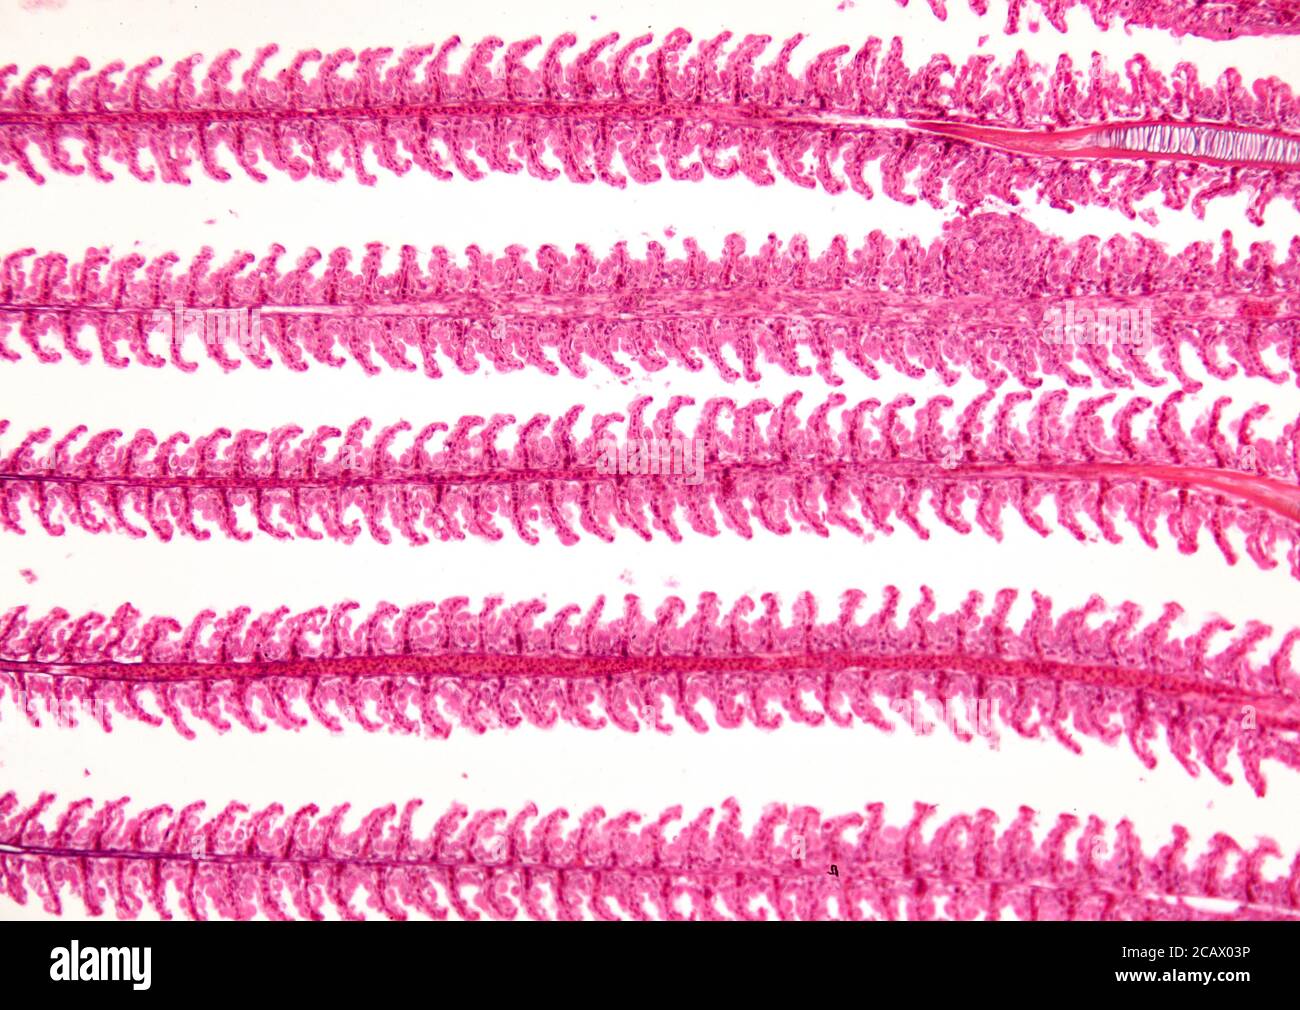 Fischkiemchen Detail, Hellfeld Photomikrograph Stockfoto